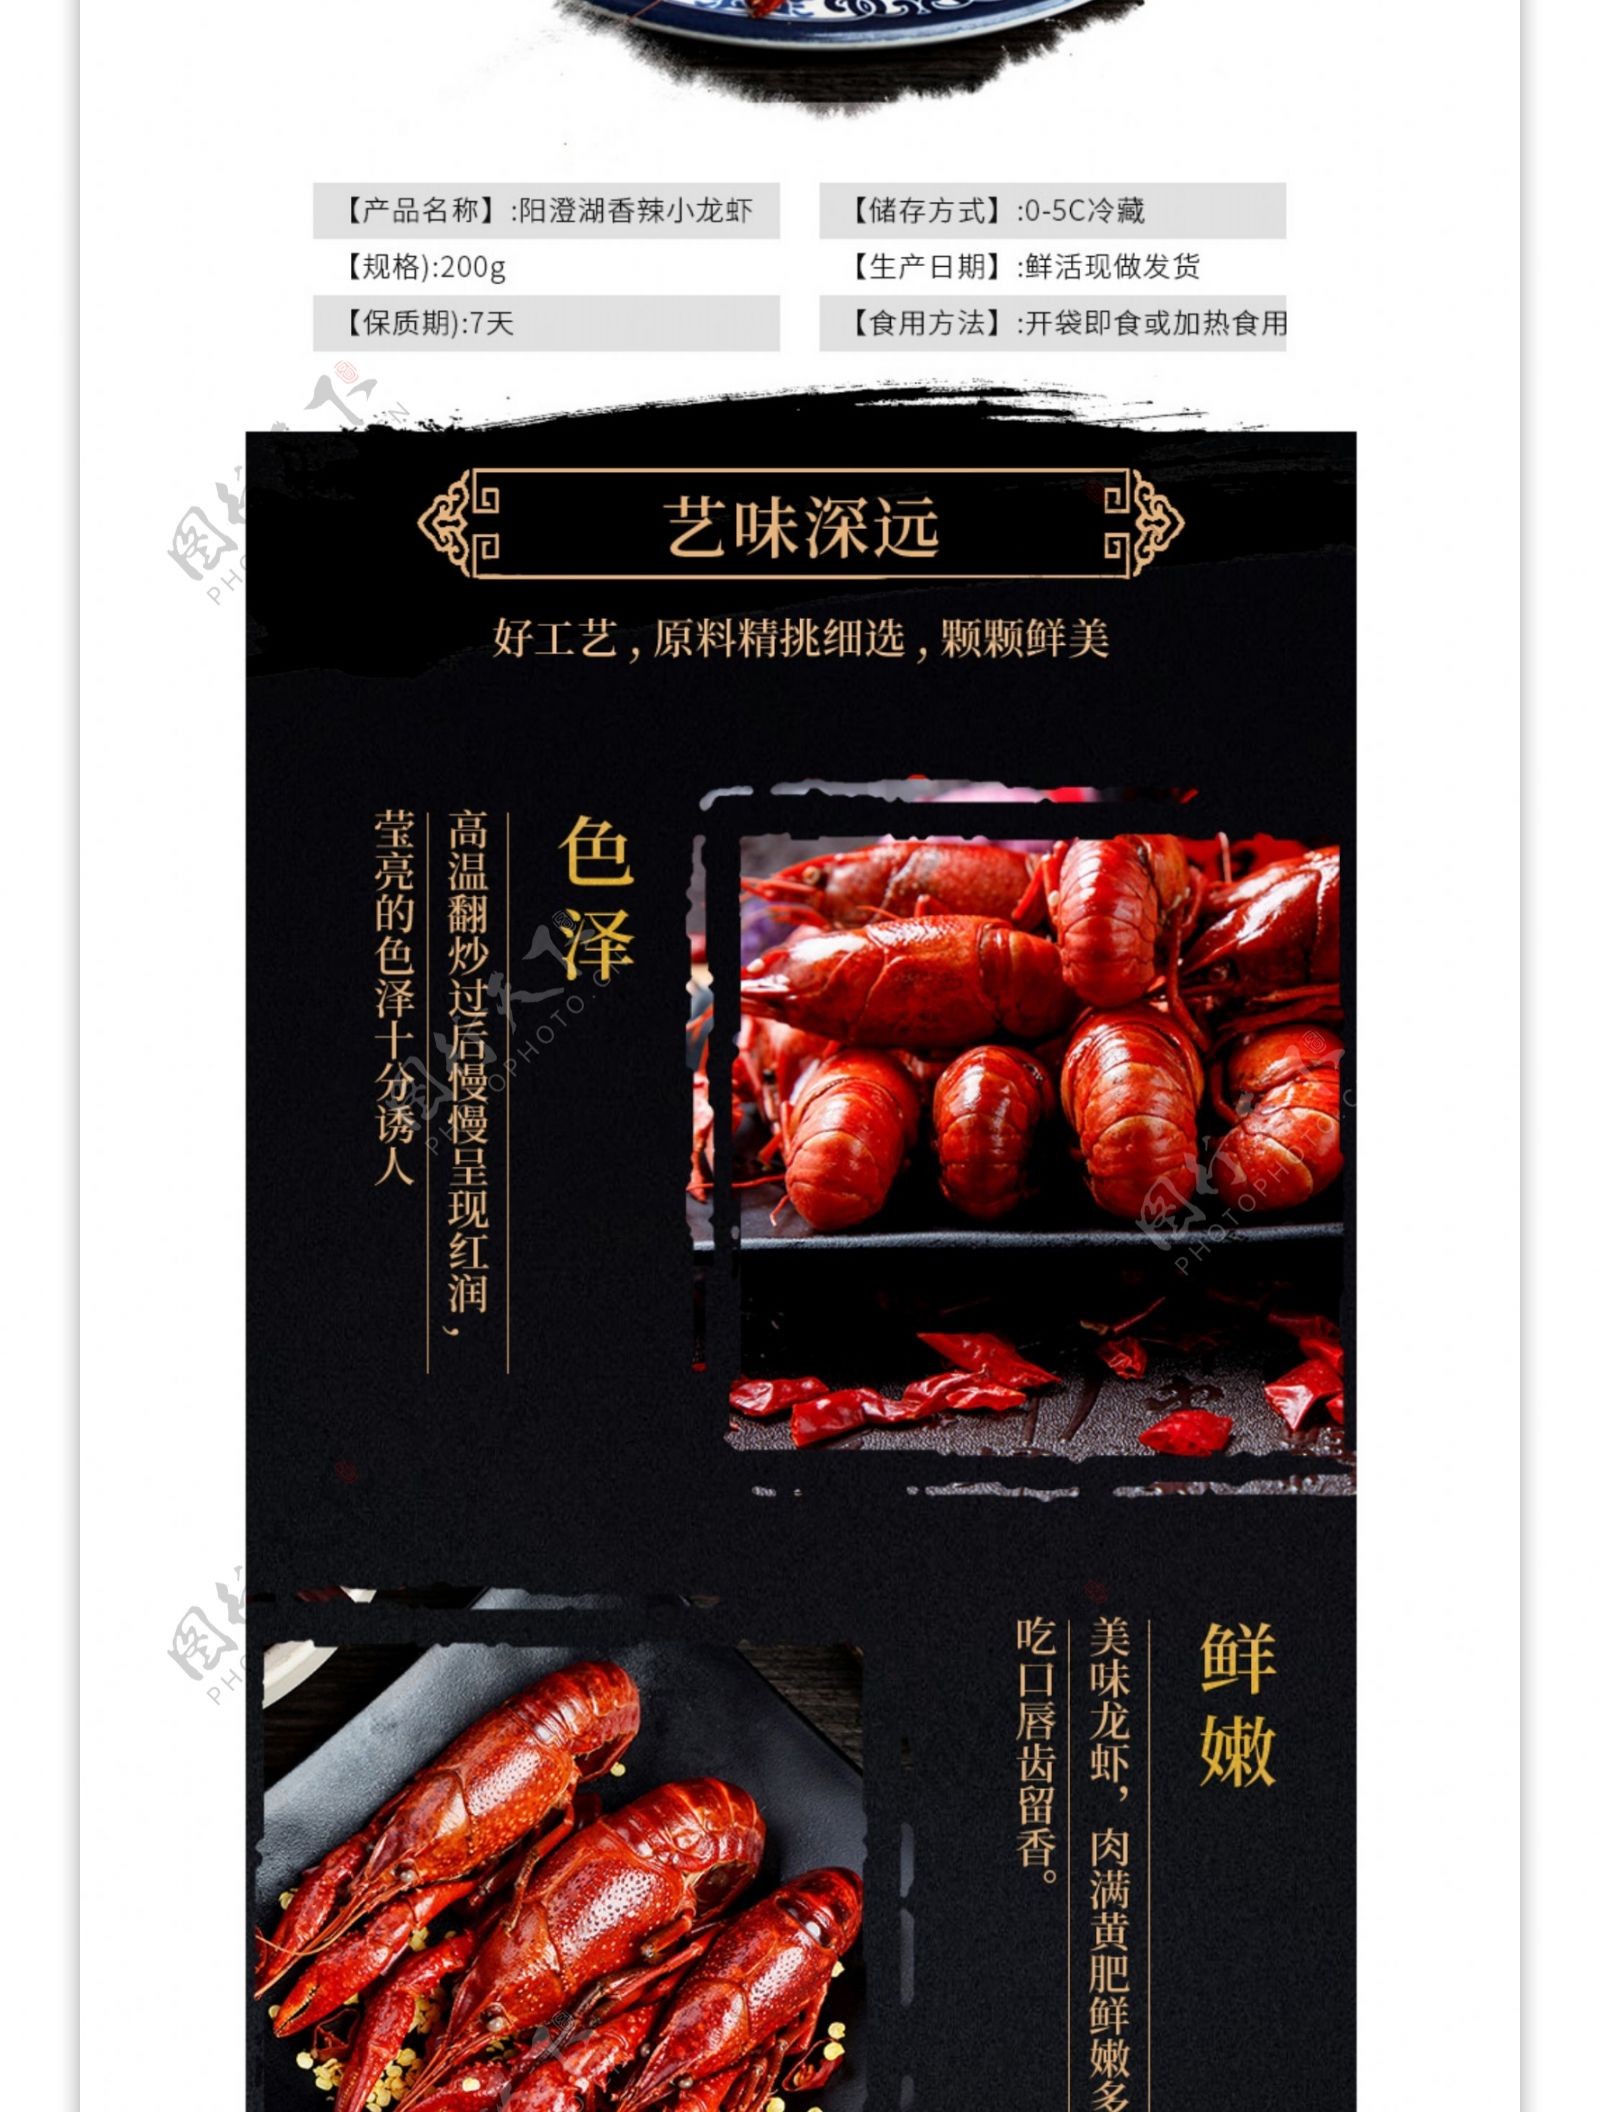 电商详情页中国风食品麻辣龙虾